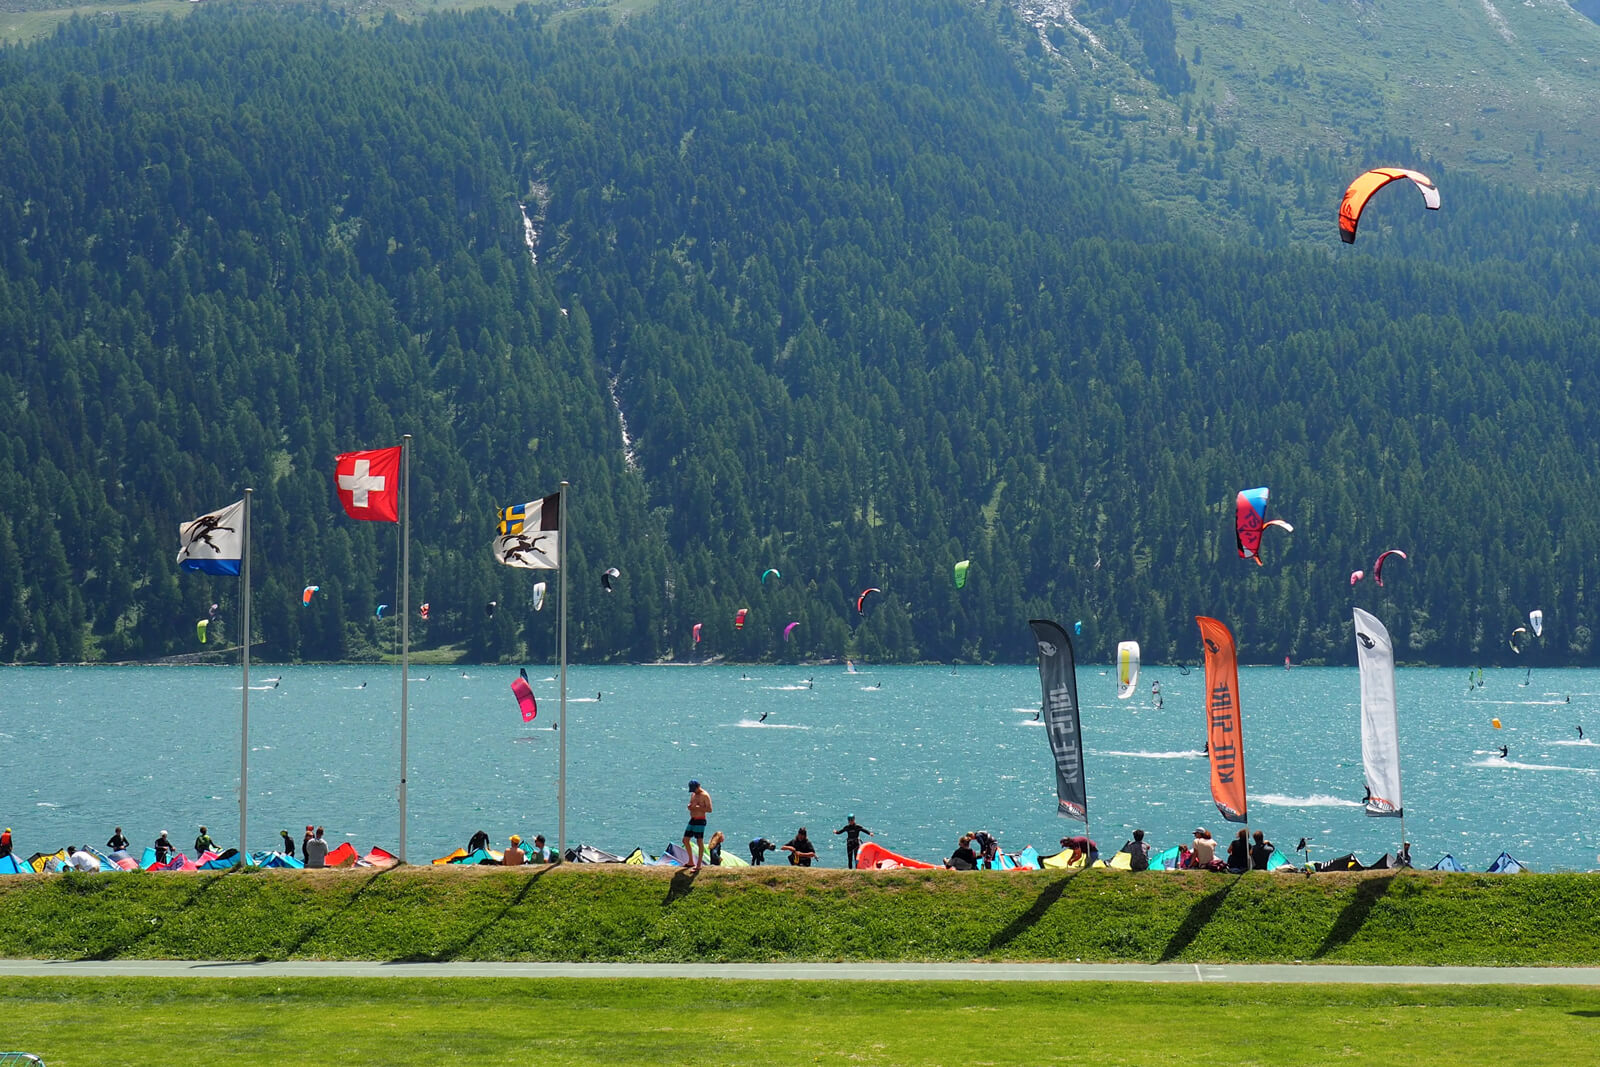 Lake Silvaplana Kitesurfing in July 2020